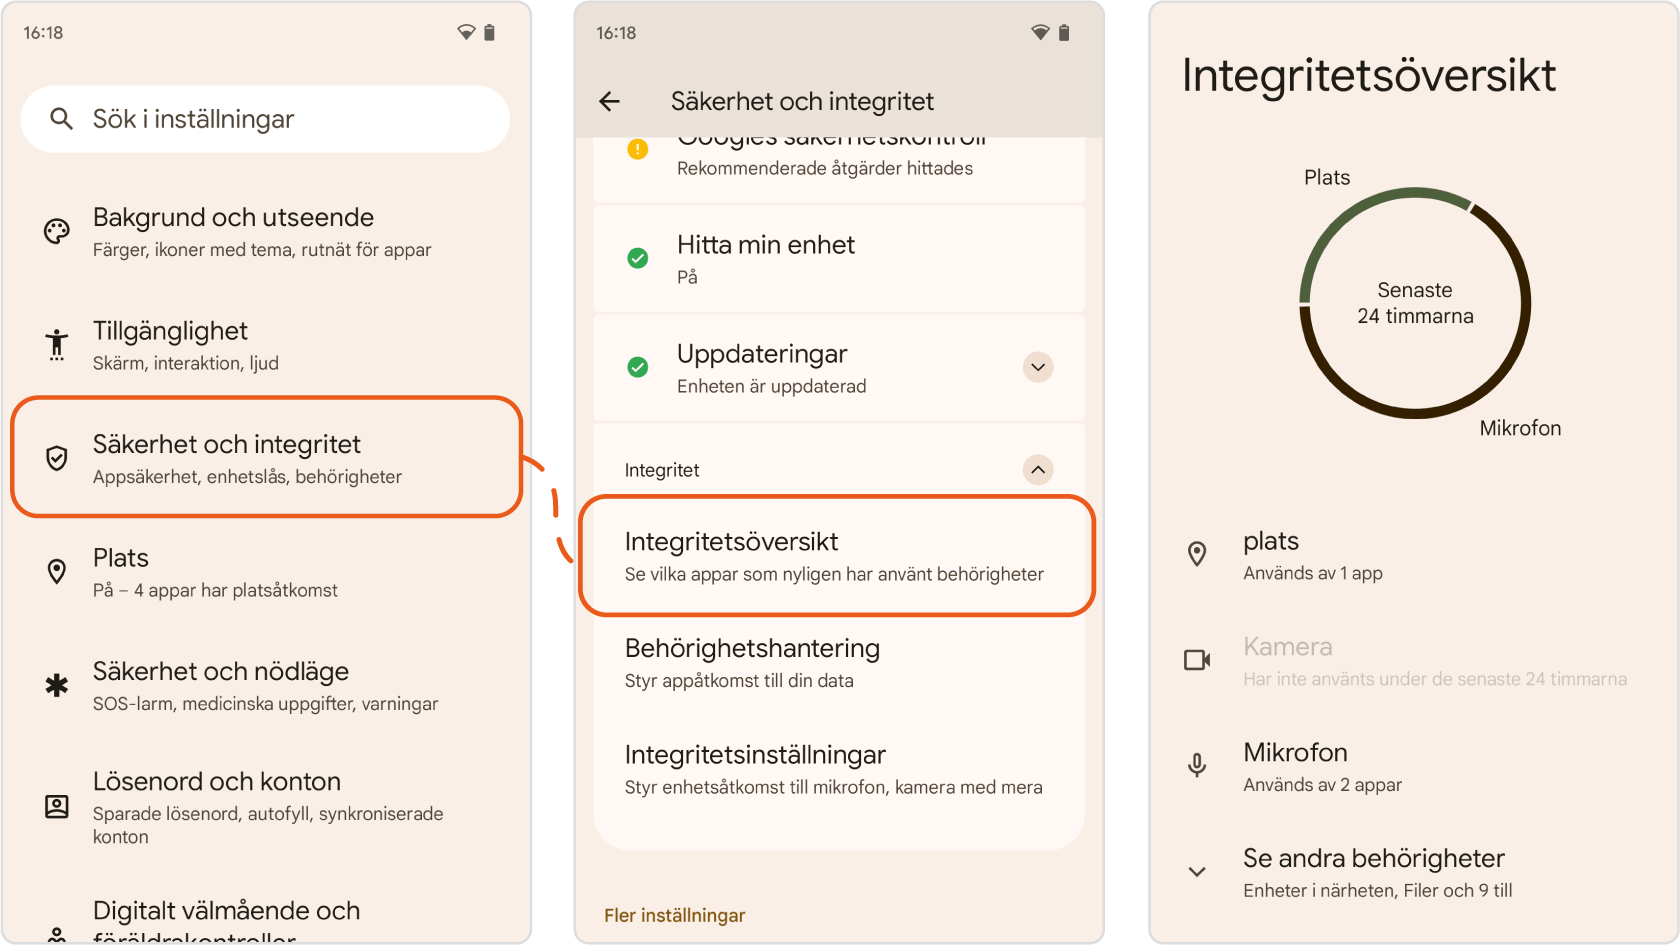 Skärmavbilder från Android-inställningarna som visar var inställningarna för apparnas integritetsöversikt ligger. Öppna Inställningar, klicka på ”Säkerhet och integritet” och välj Integritet följt av Integritetsöversikt. 